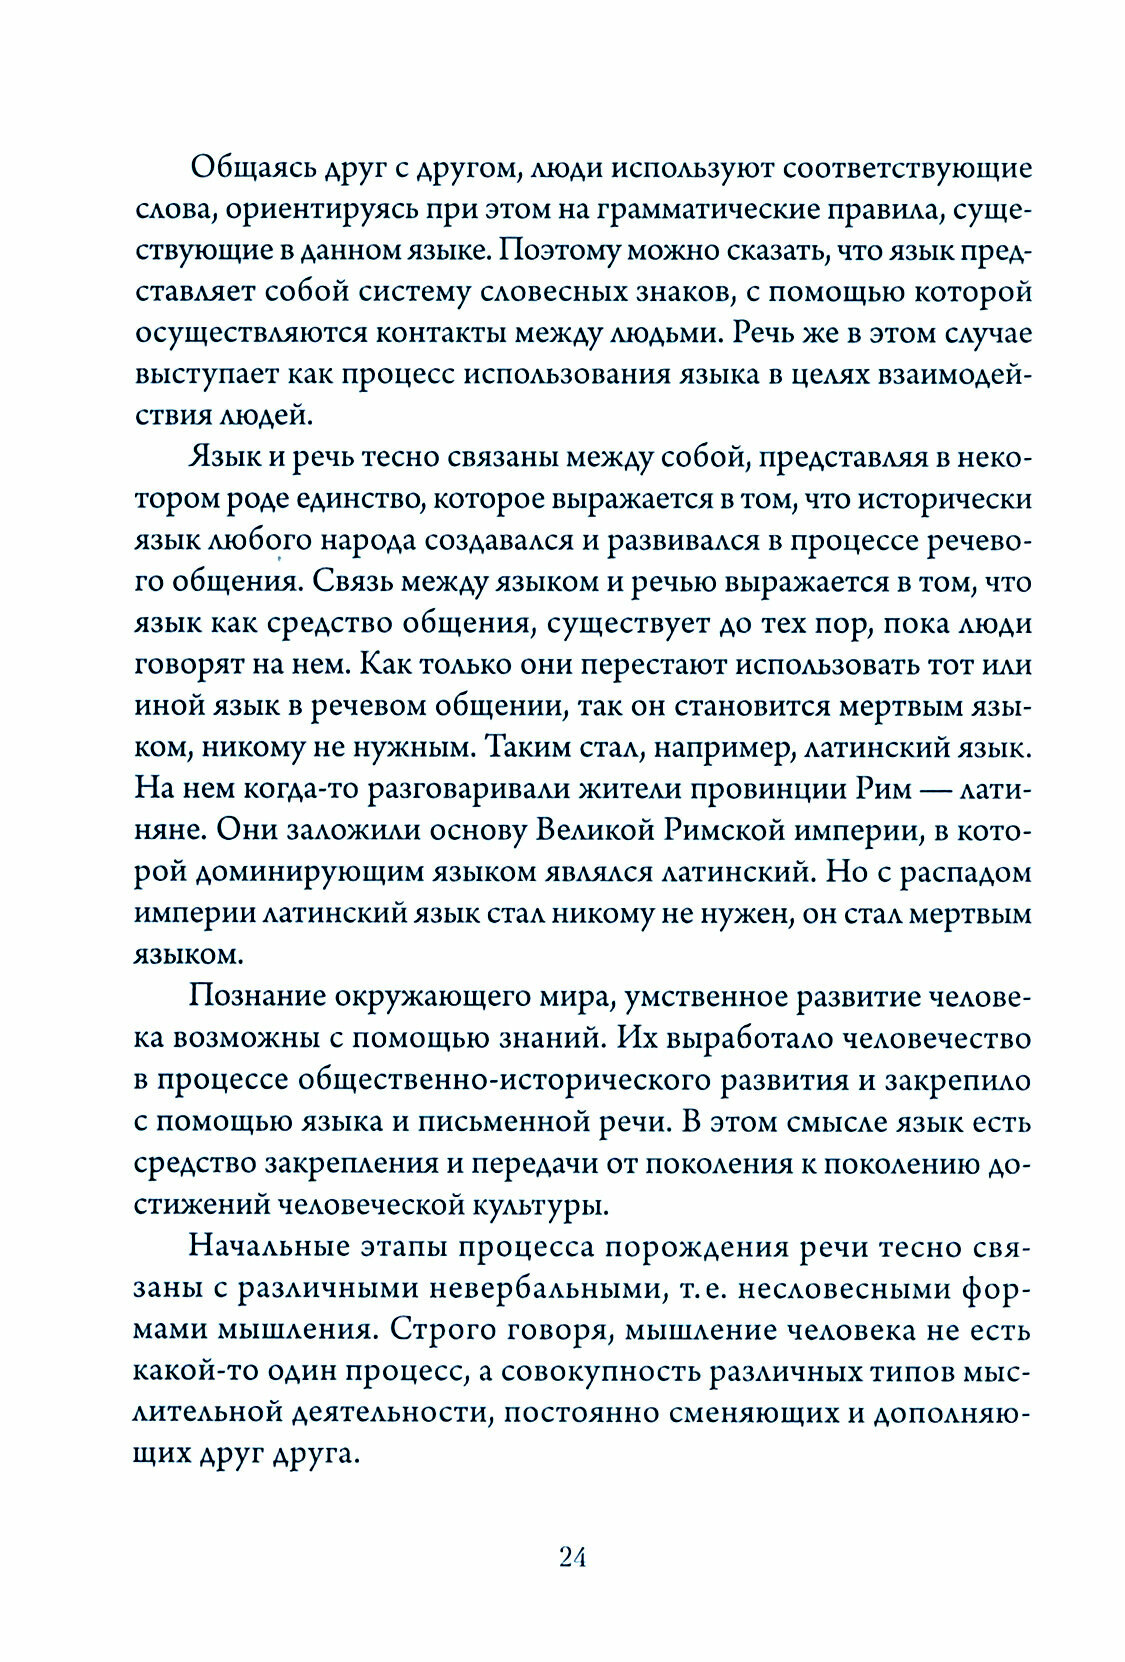 Научно-популярная книга о русском языке и культуре речи - фото №3